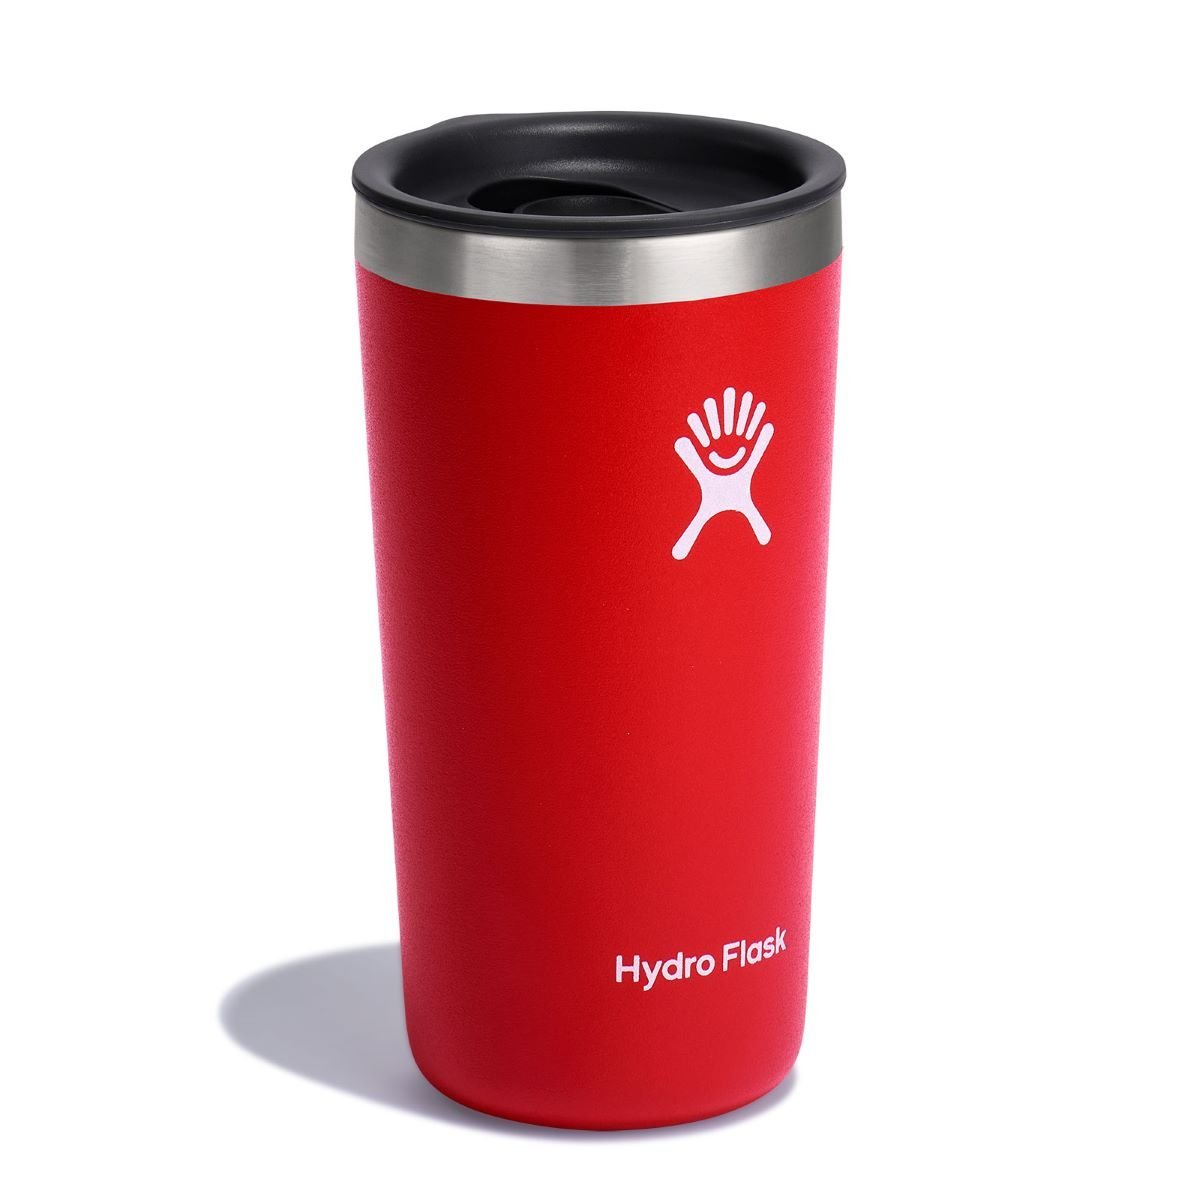 Termopohár Hydro Flask 12 OZ (355 ml) All Around Tumbler - červená